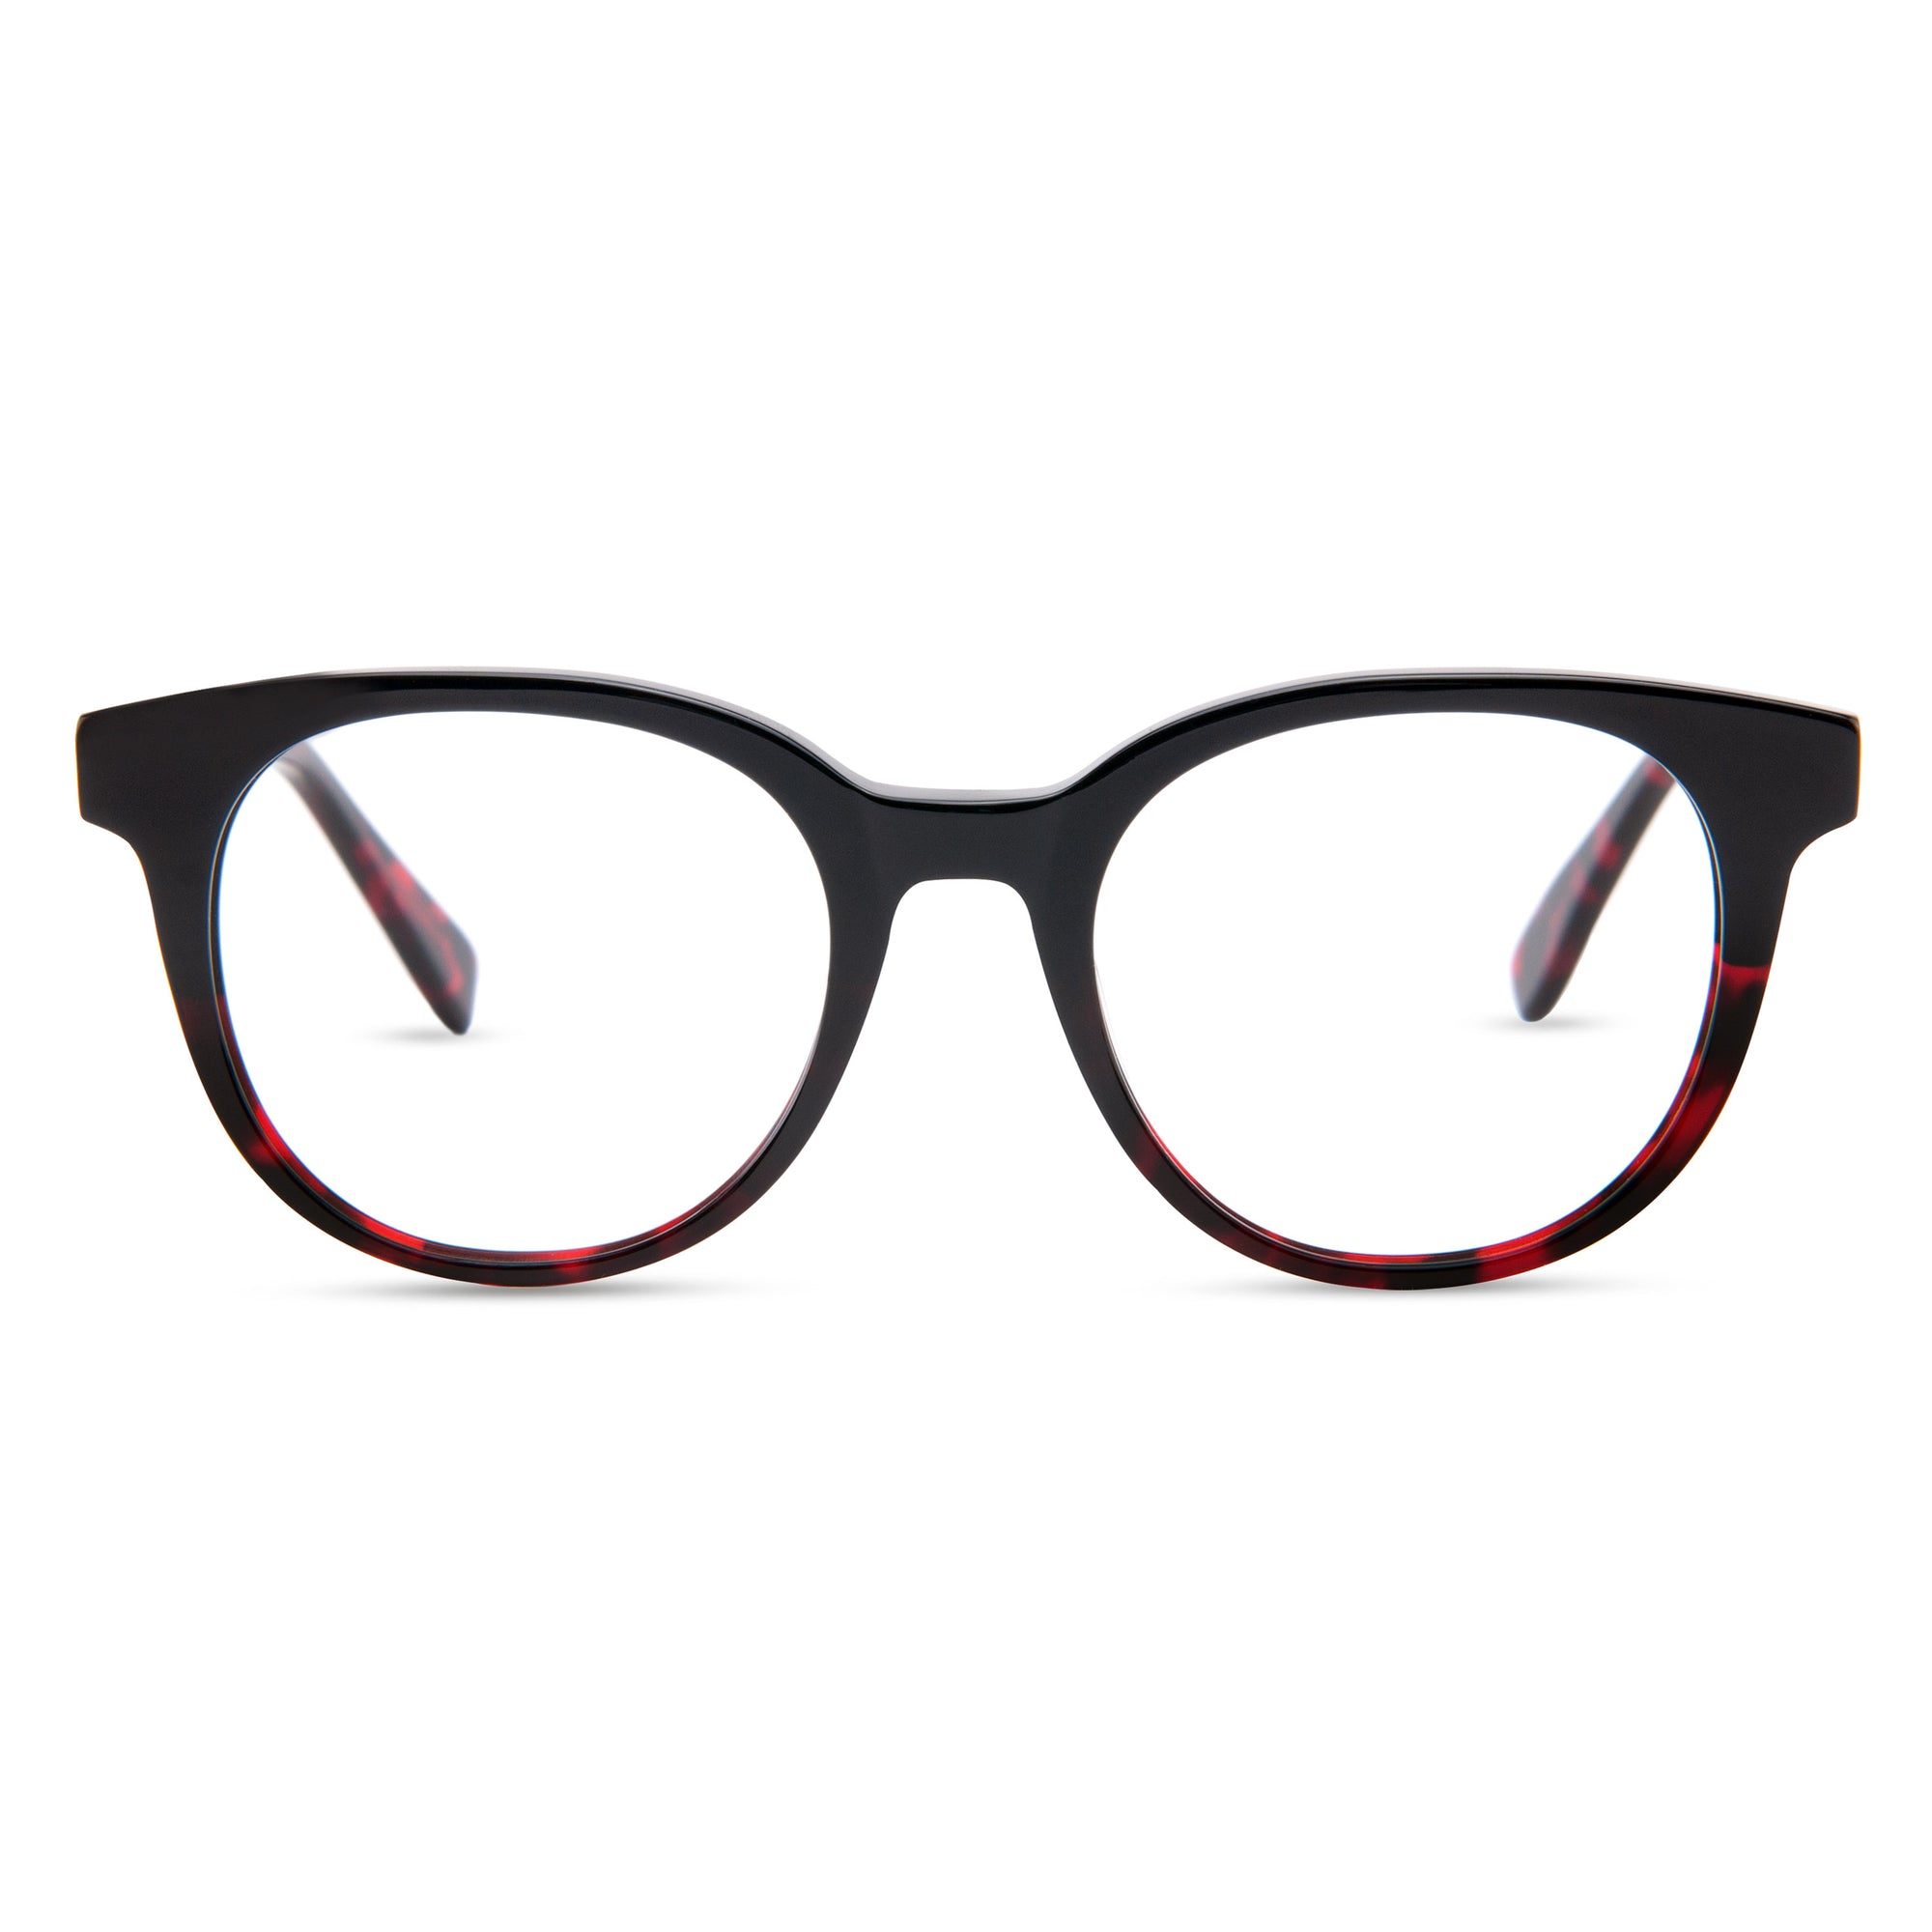 Las 9 mejores gafas anti luz azul para proteger tus ojos